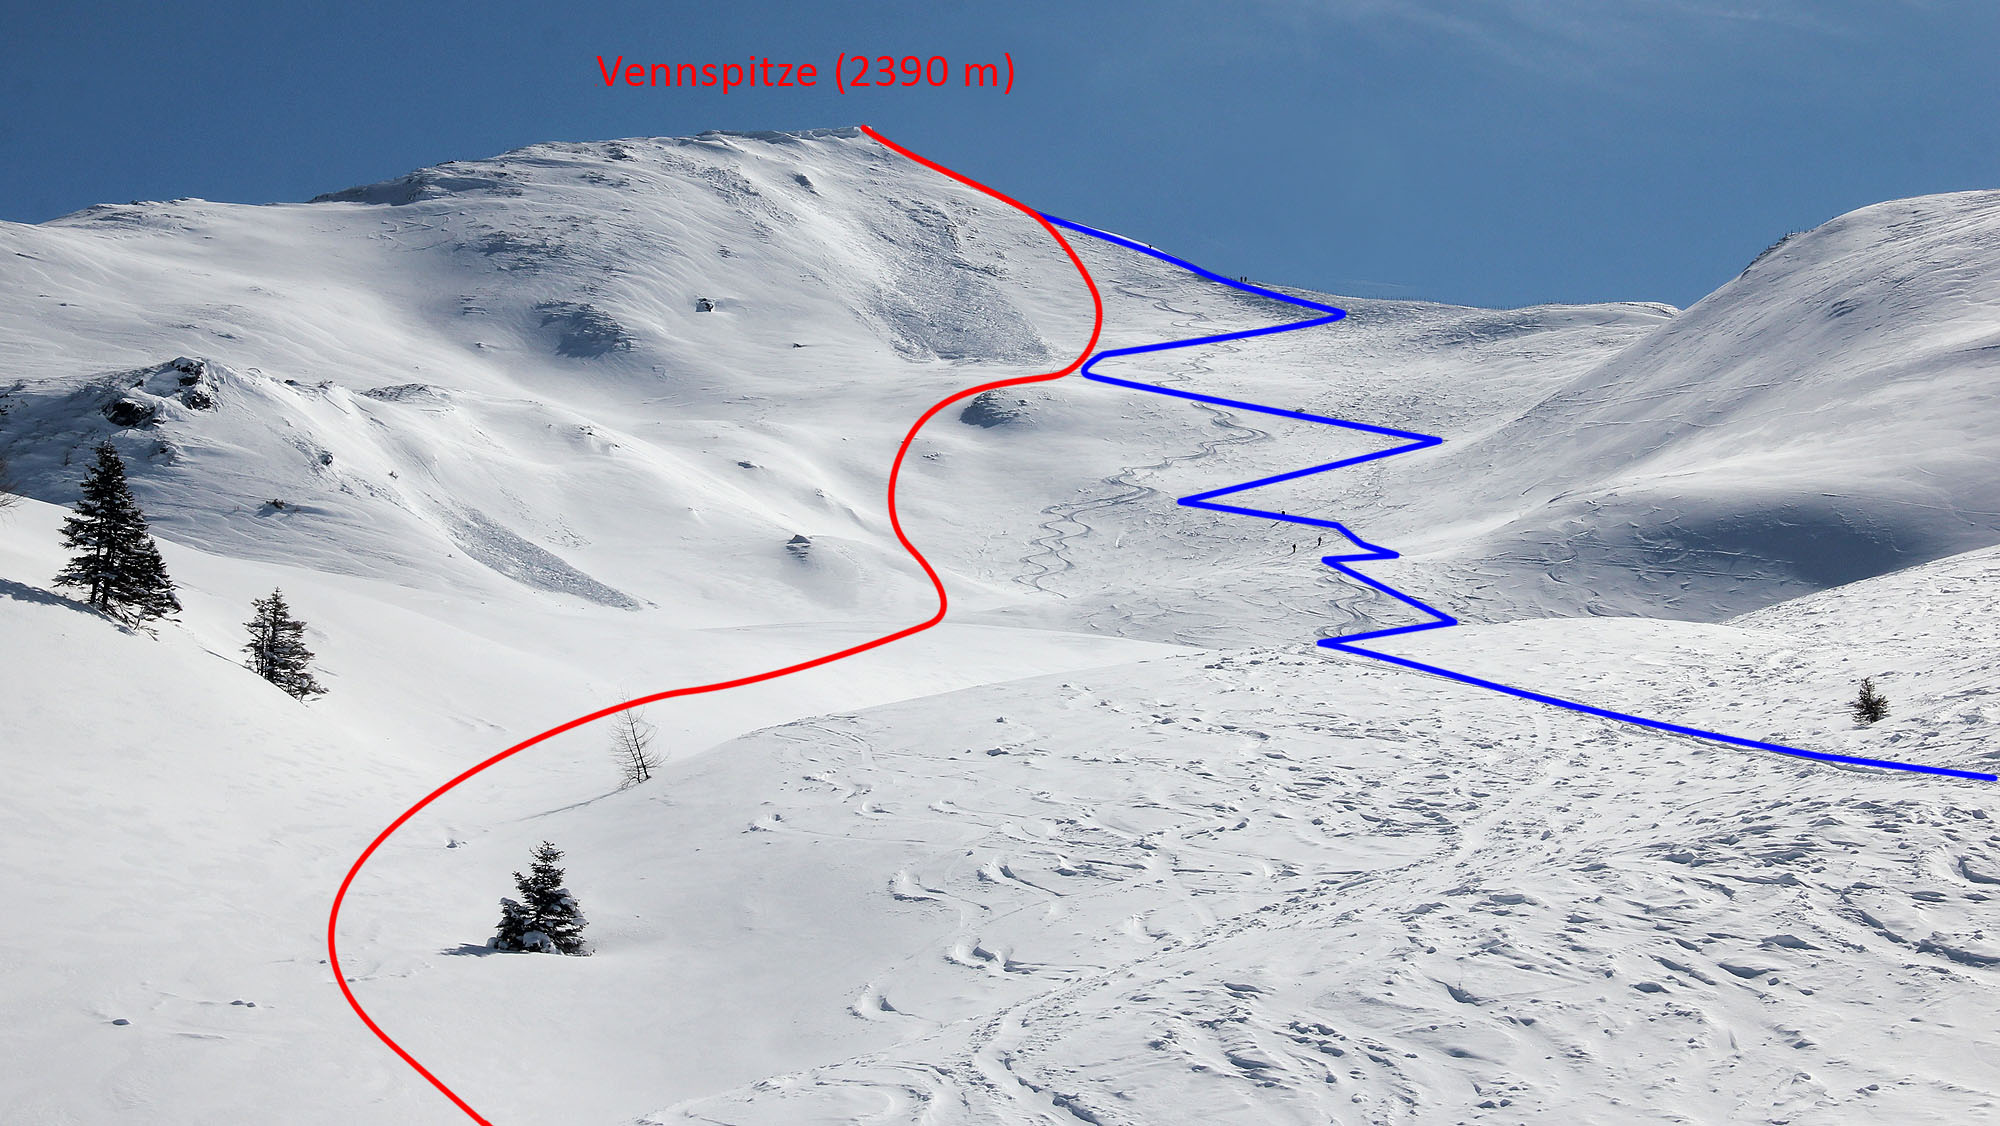 Výstup na Vennspitze je značen modře, jeden z možných sjezdů červeně